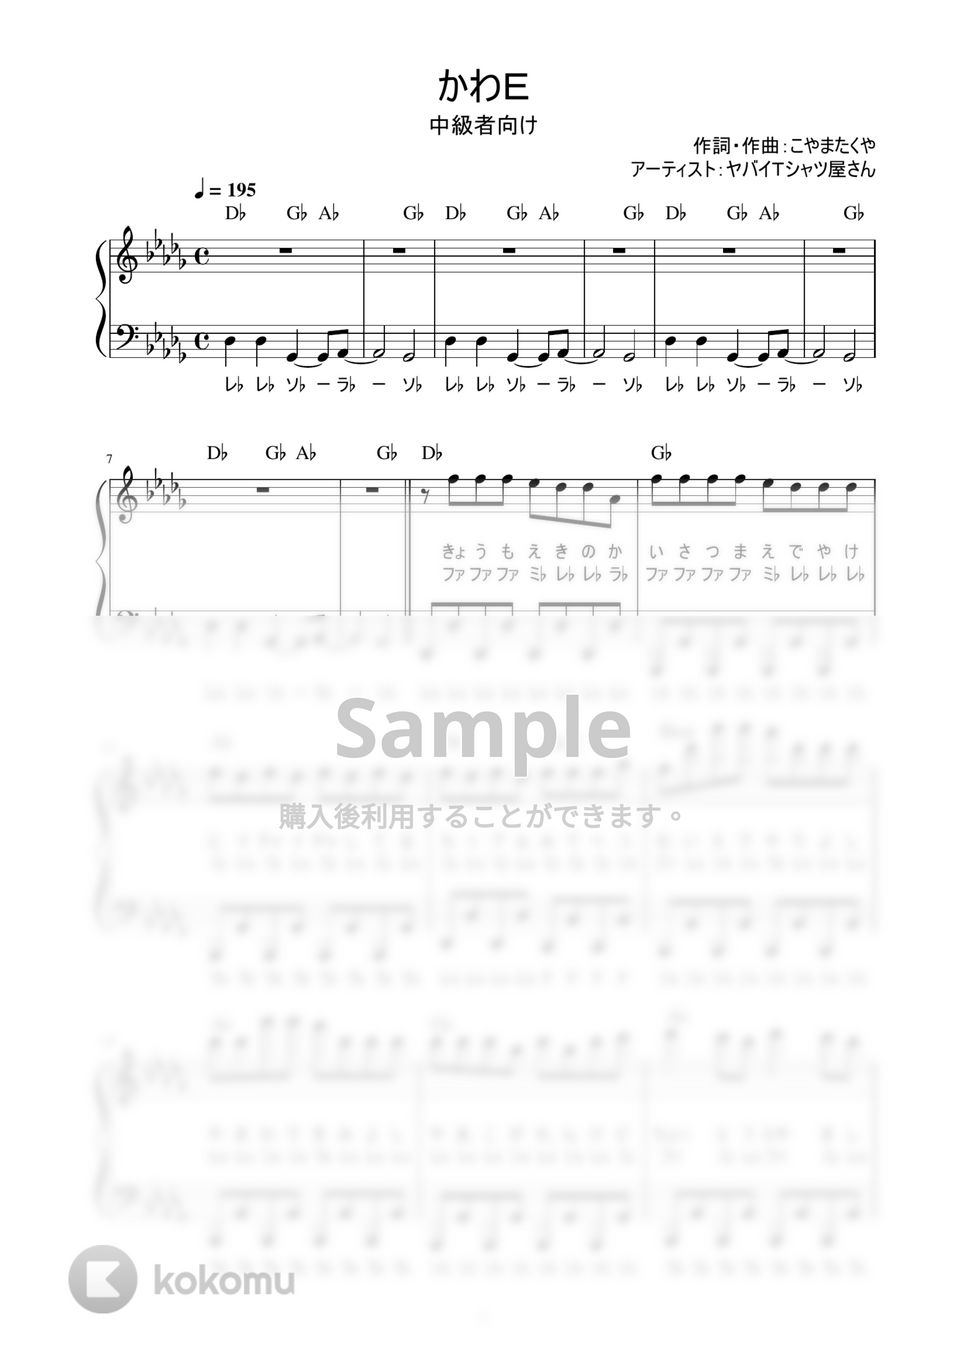 ヤバイTシャツ屋さん - かわE (歌詞付き / ドレミ付き / 中級者) by piano.tokyo